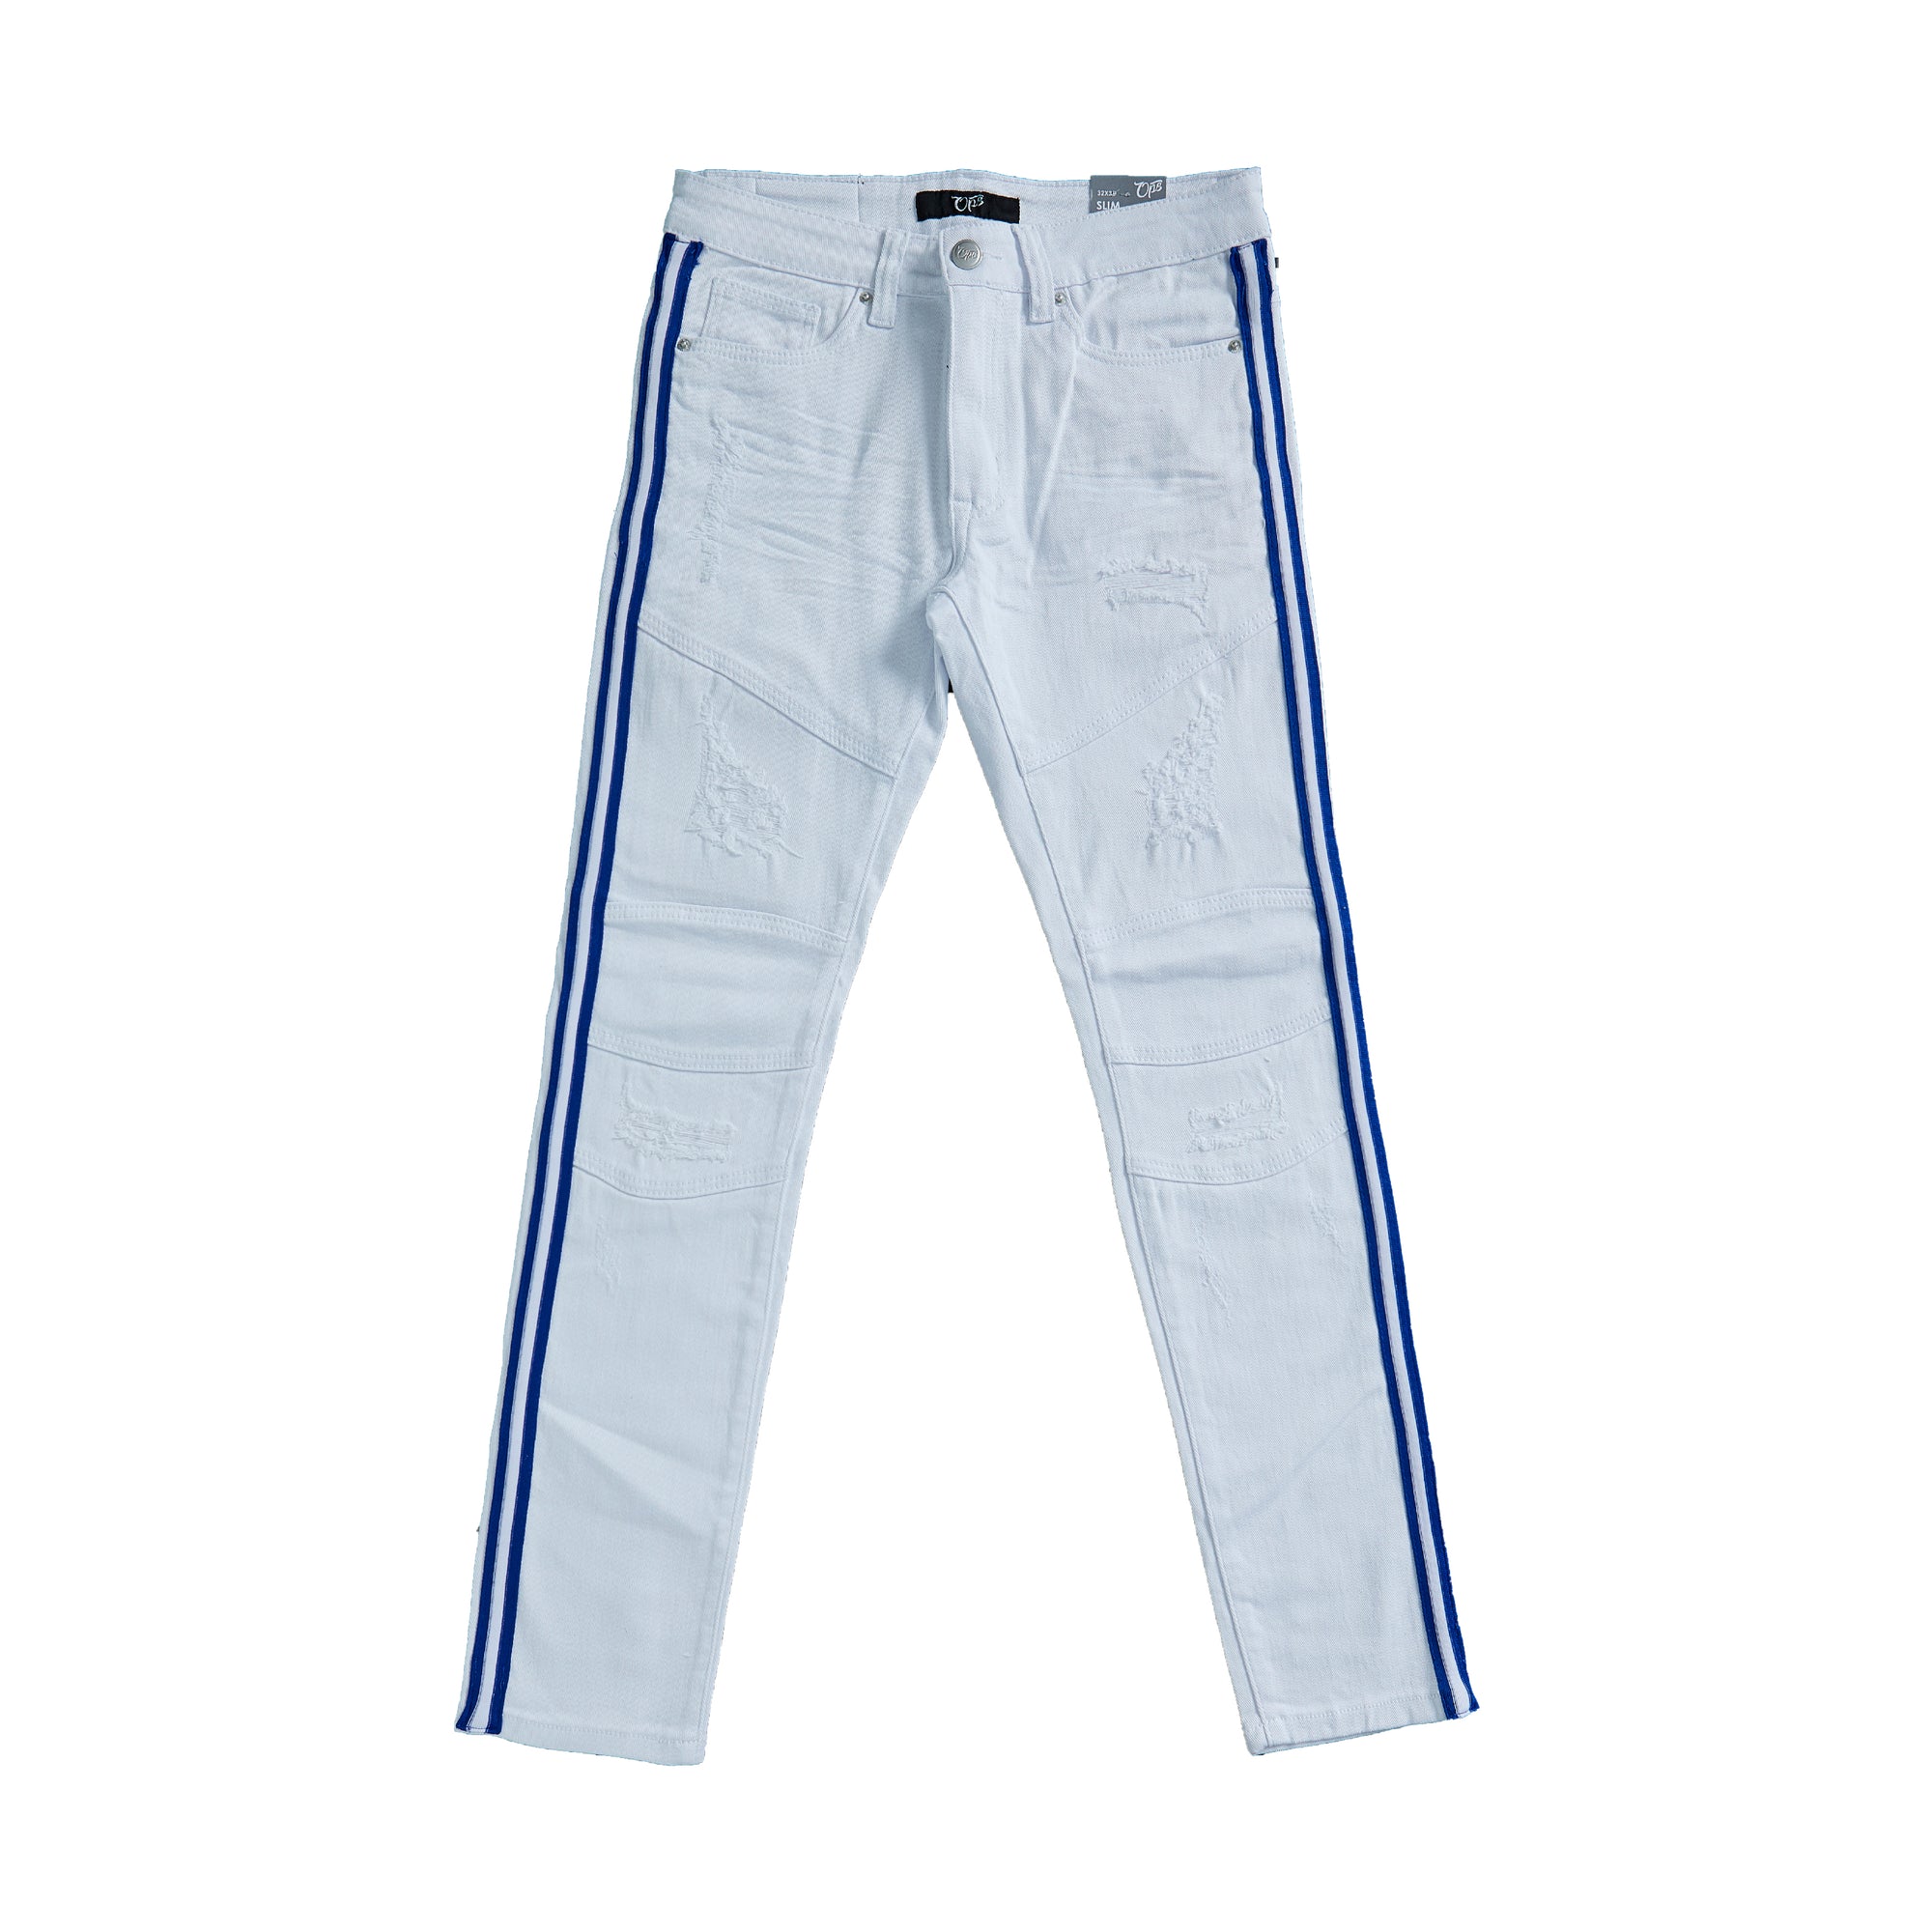 Premium Striped Jean (White/Royal Blue)